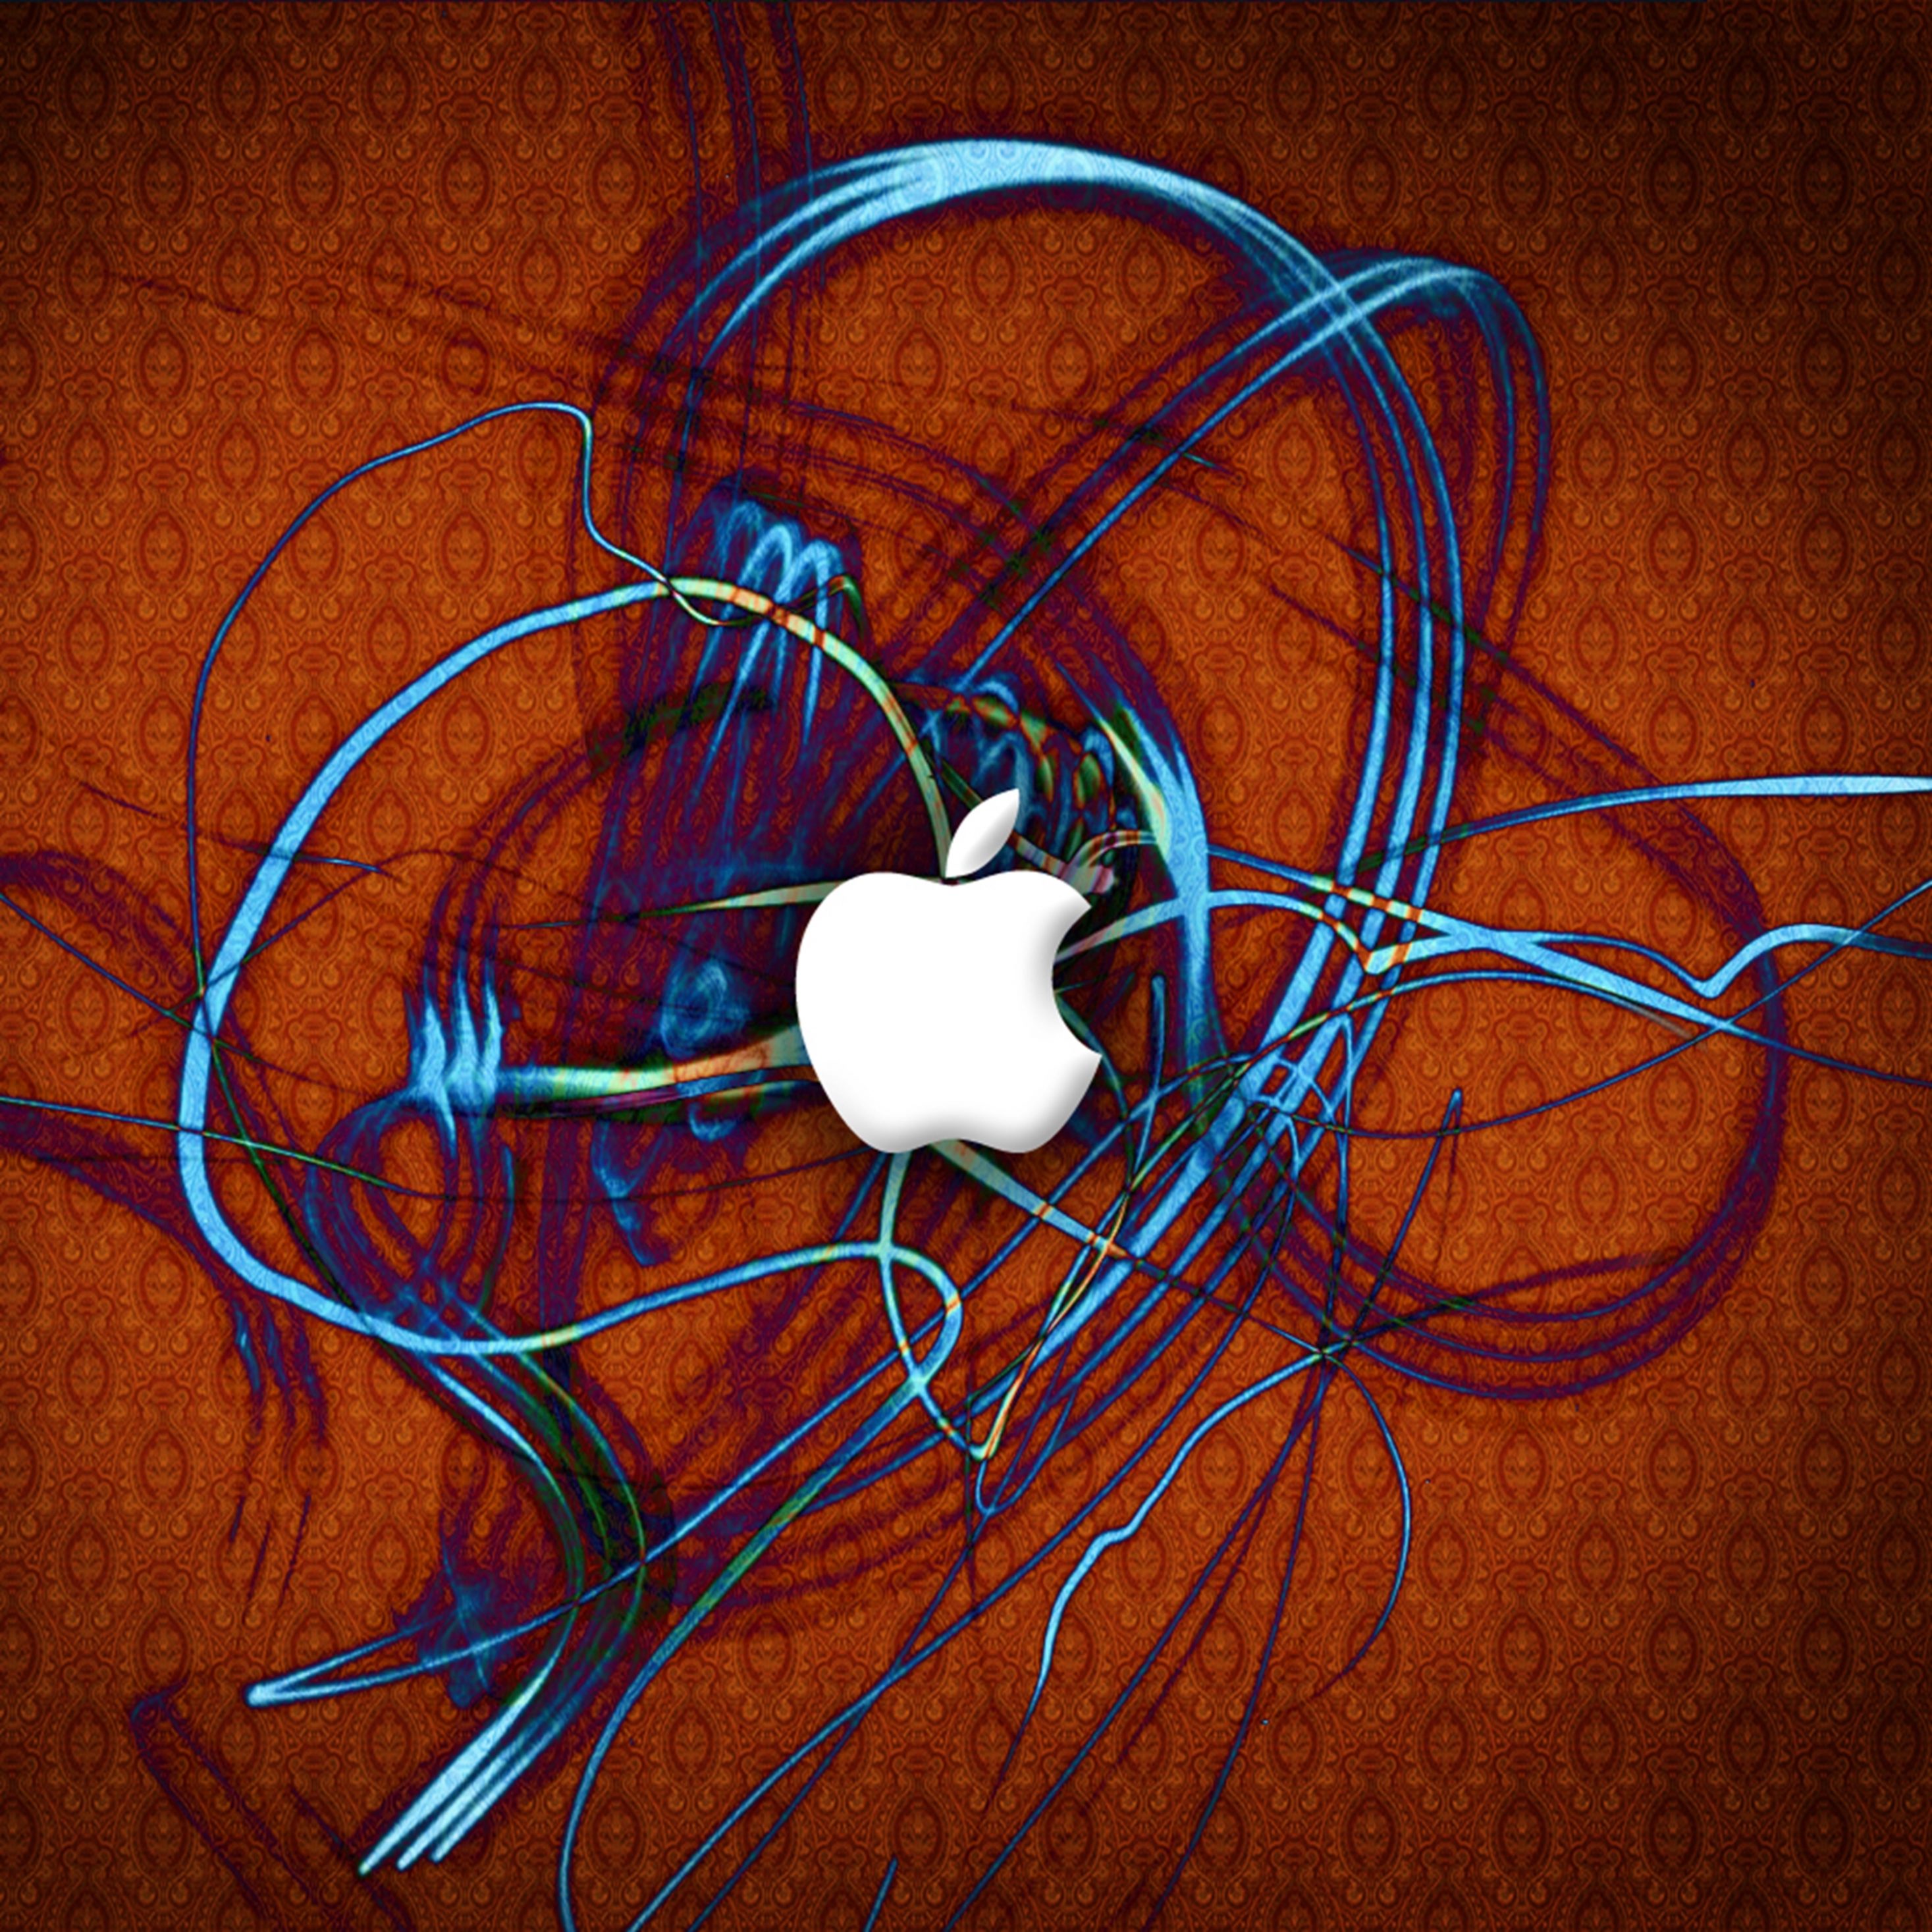 2934x2934 iOS iPad wallpaper 4k Apple Blue Ribbon Ipad Wallpaper 2934x2934 pixels resolution